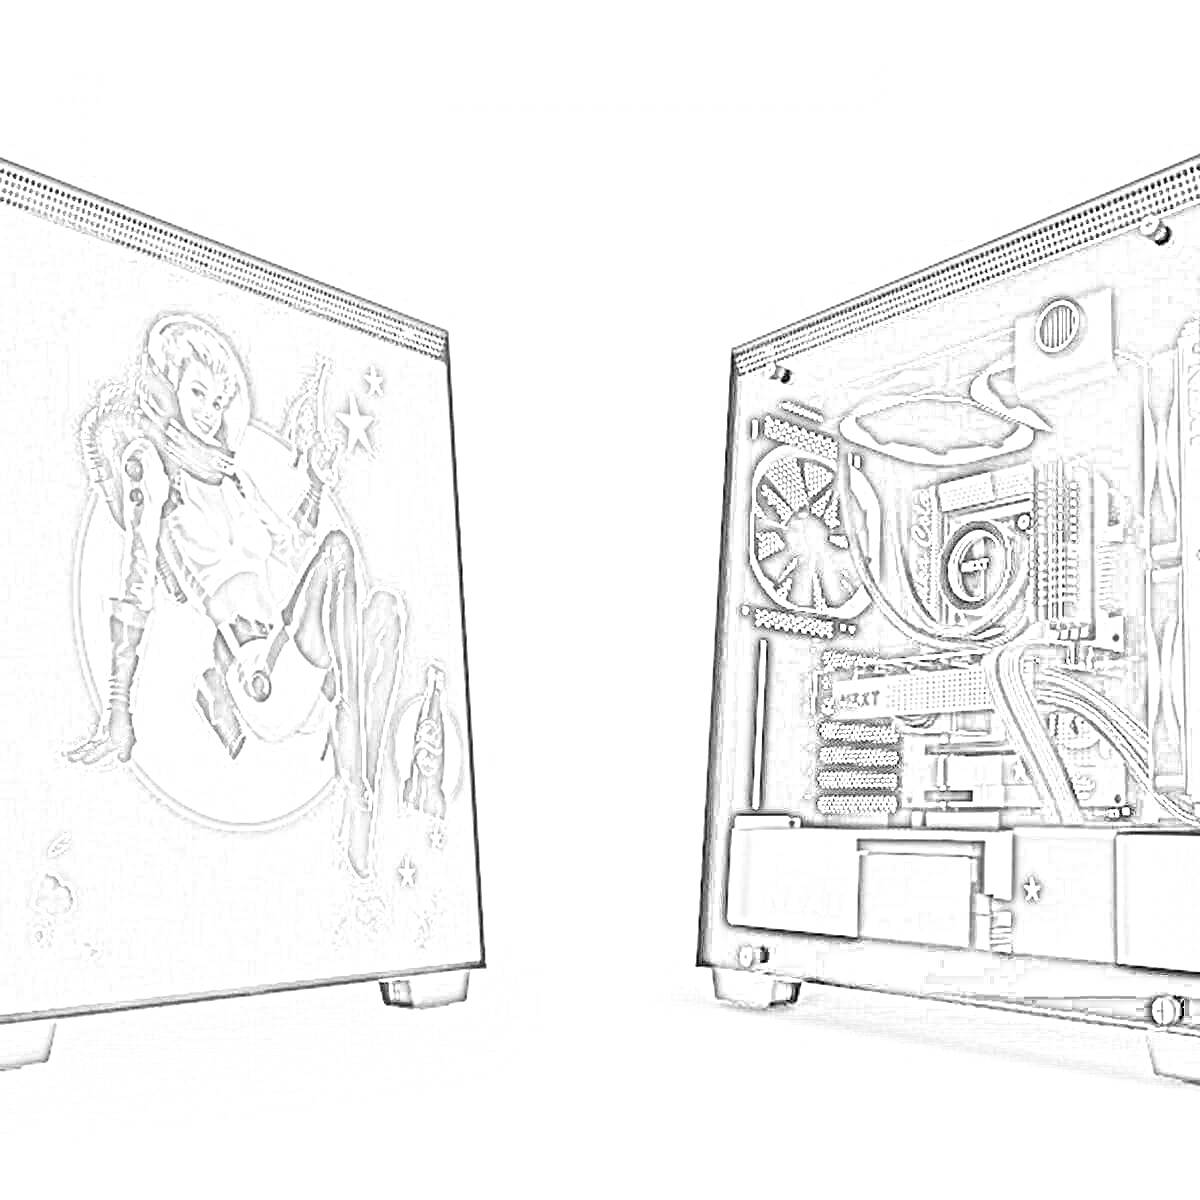 Корпус ПК с боковой панелью с рисунком персонажа в космическом костюме и открытой панелью с установленными комплектующими (вентиляторы, кабели, водяное охлаждение, видеокарта, блок питания).